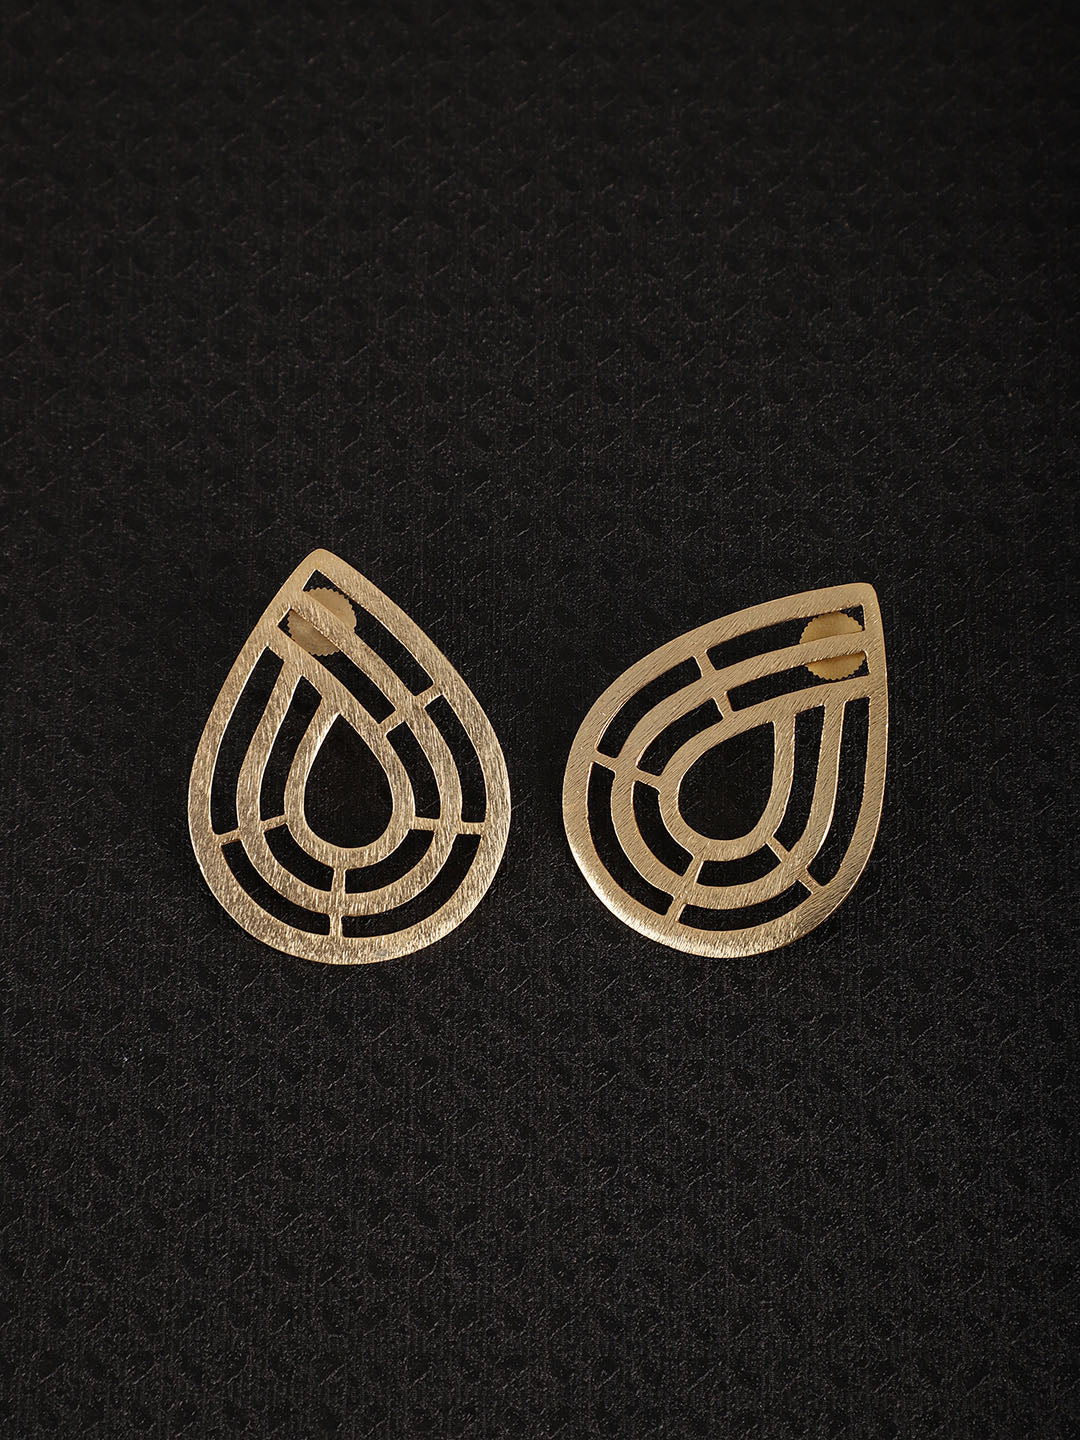 Gold Plated Geometric Teardrop Studs, Earrings - Shopberserk